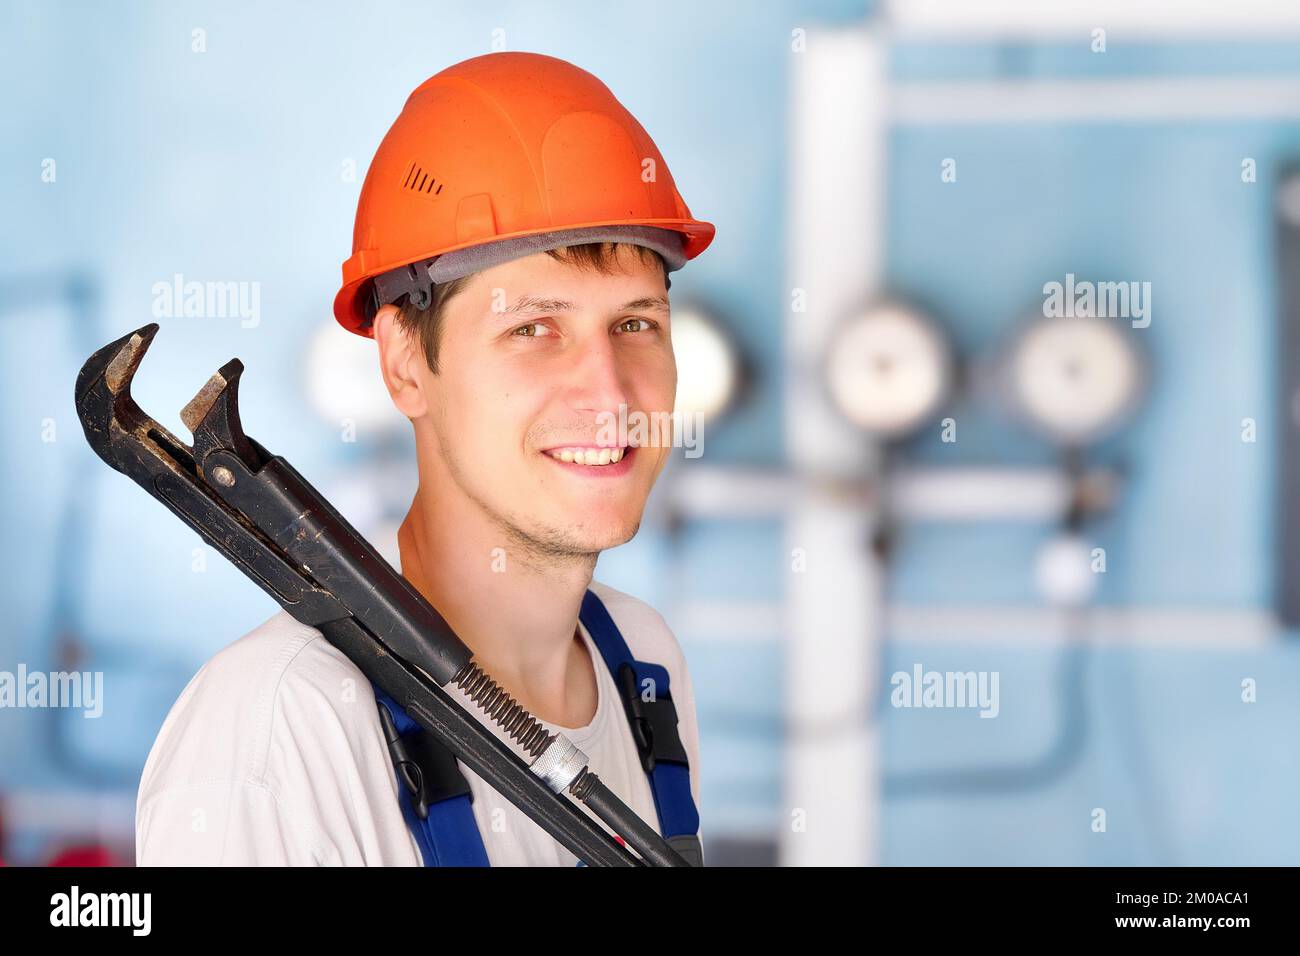 L'idraulico industriale positivo o l'operatore nel casco tiene la chiave regolabile grande sulla sua spalla e sorride. Ritratto in interni sullo sfondo di sensori e manometri in sfocatura. Foto Stock